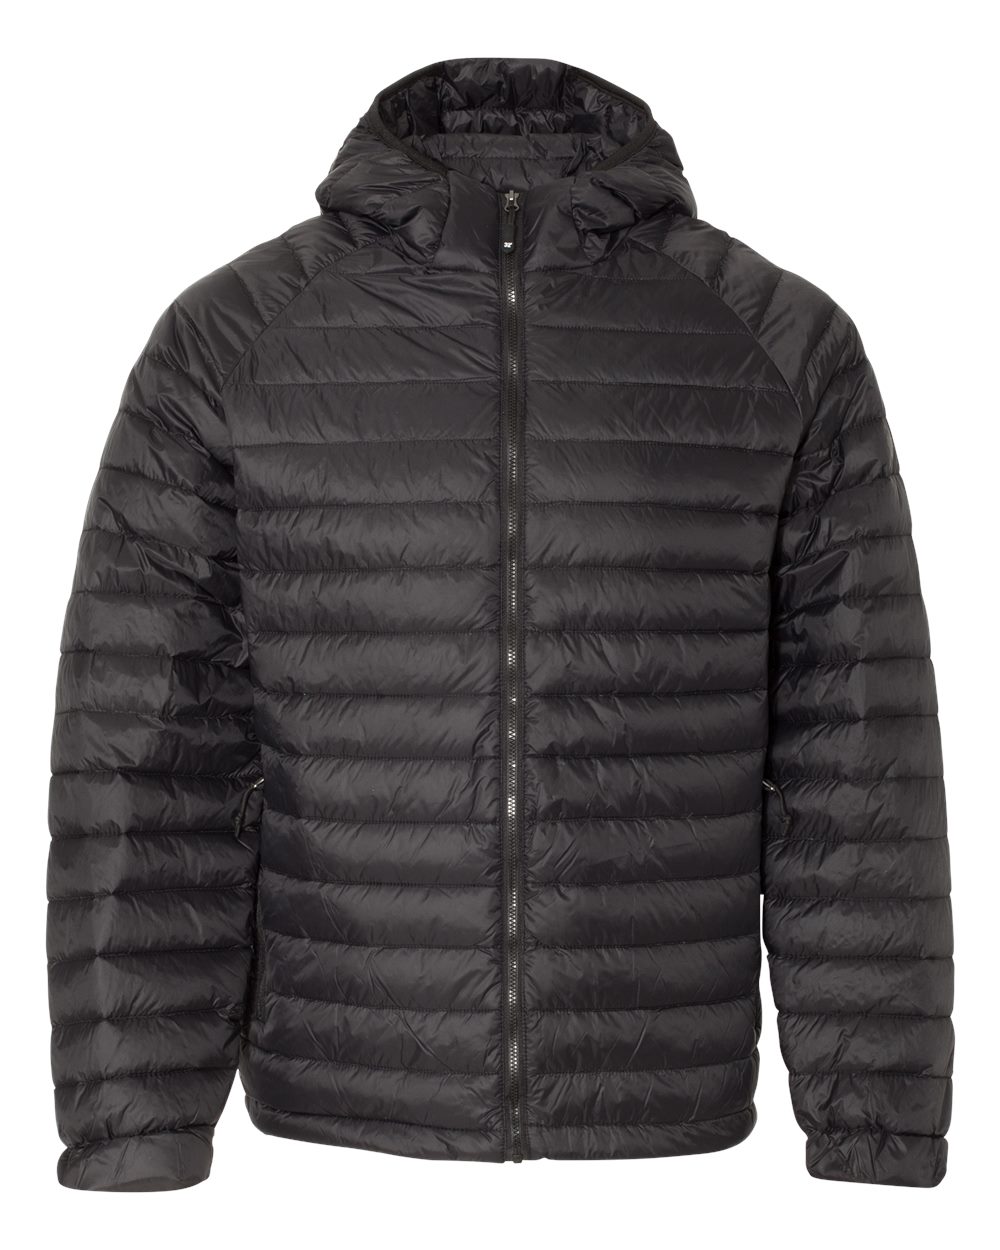 Weatherproof 17602 - 32 Degrees Hooded Packable Down Jacket $69.59